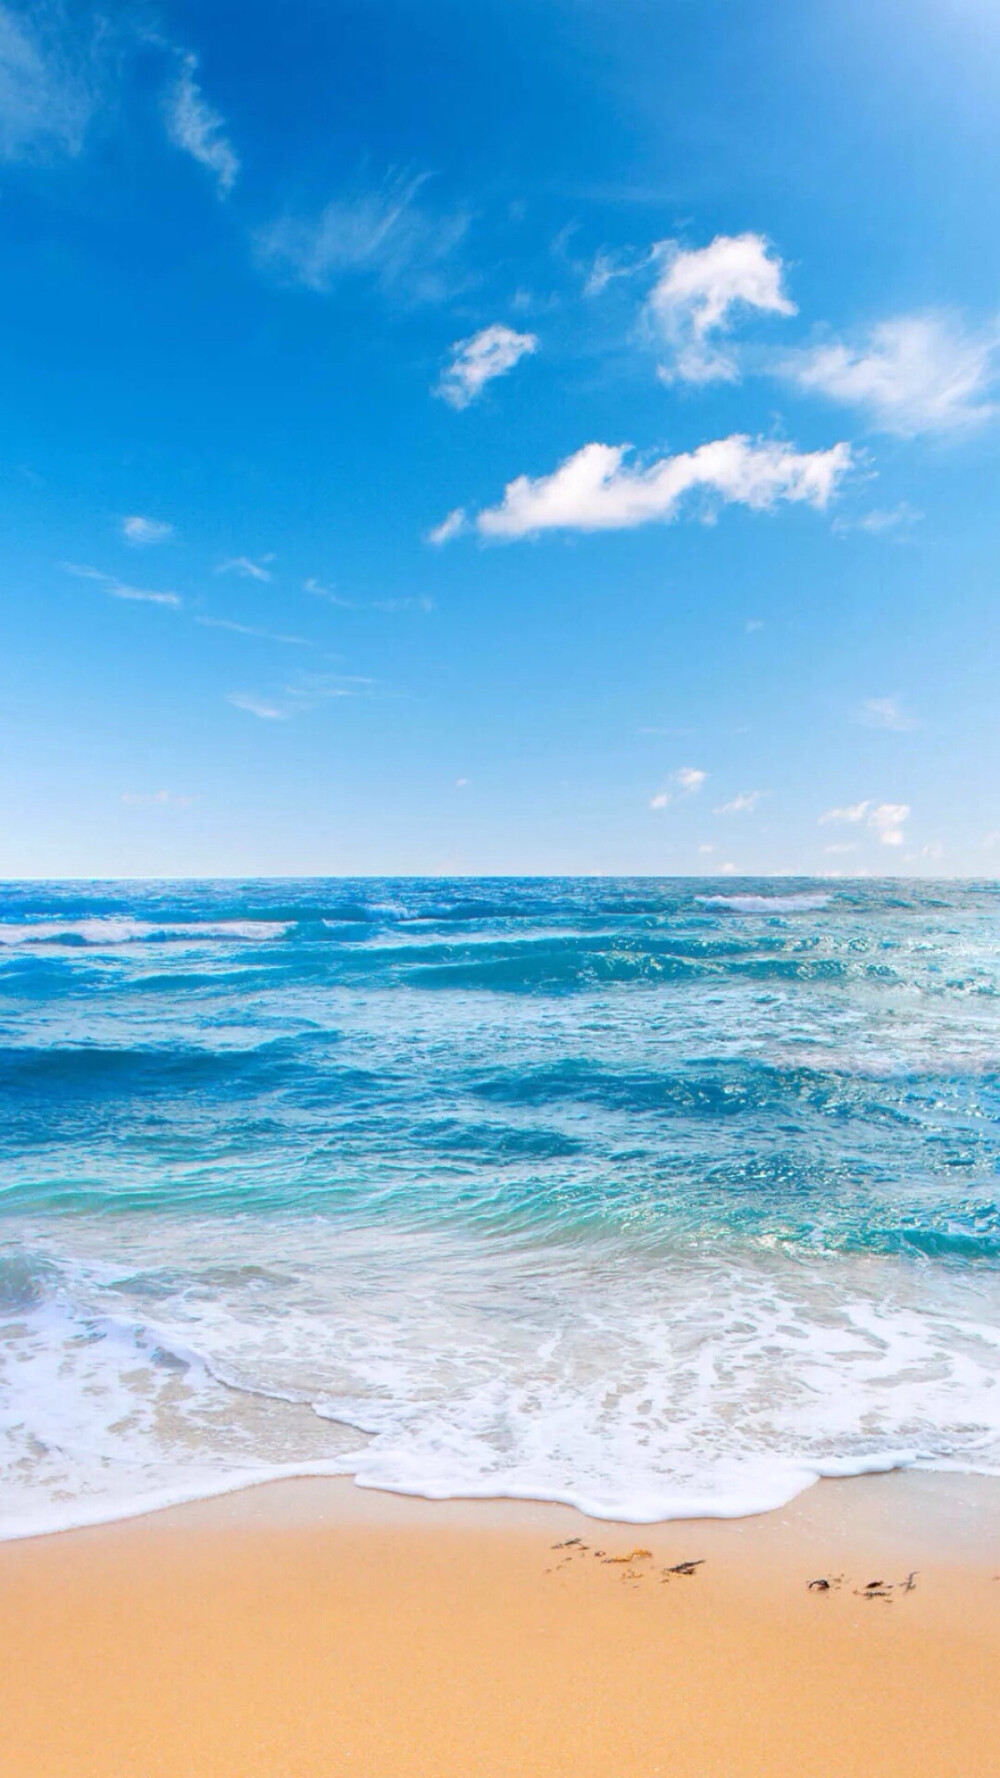 蓝天碧海 沙滩 海洋 唯美风景 iphone手机壁纸 唯美壁纸 锁屏